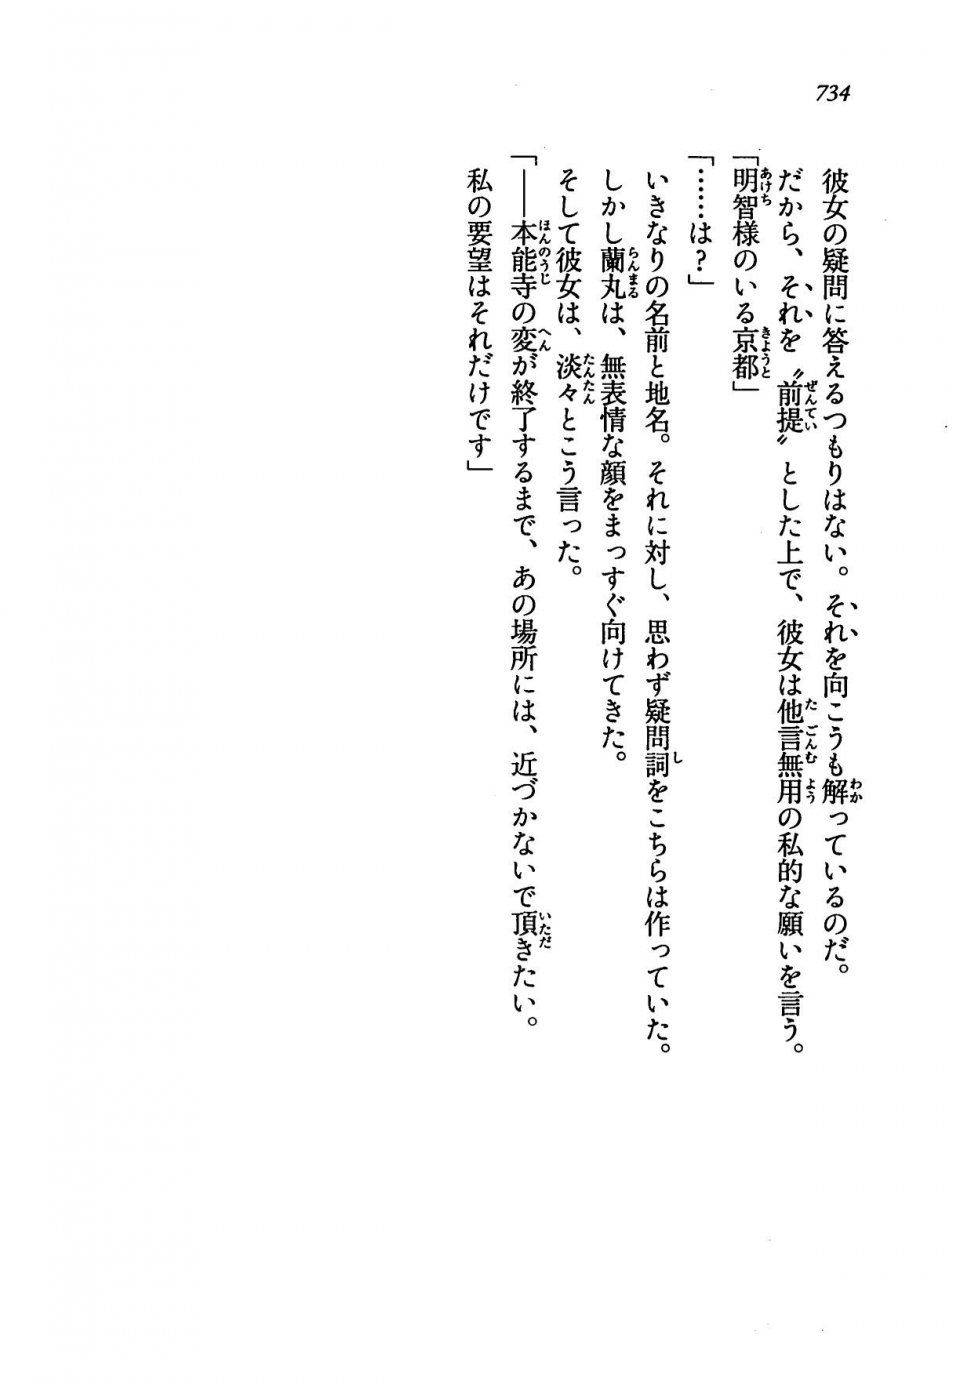 Kyoukai Senjou no Horizon LN Vol 19(8A) - Photo #734